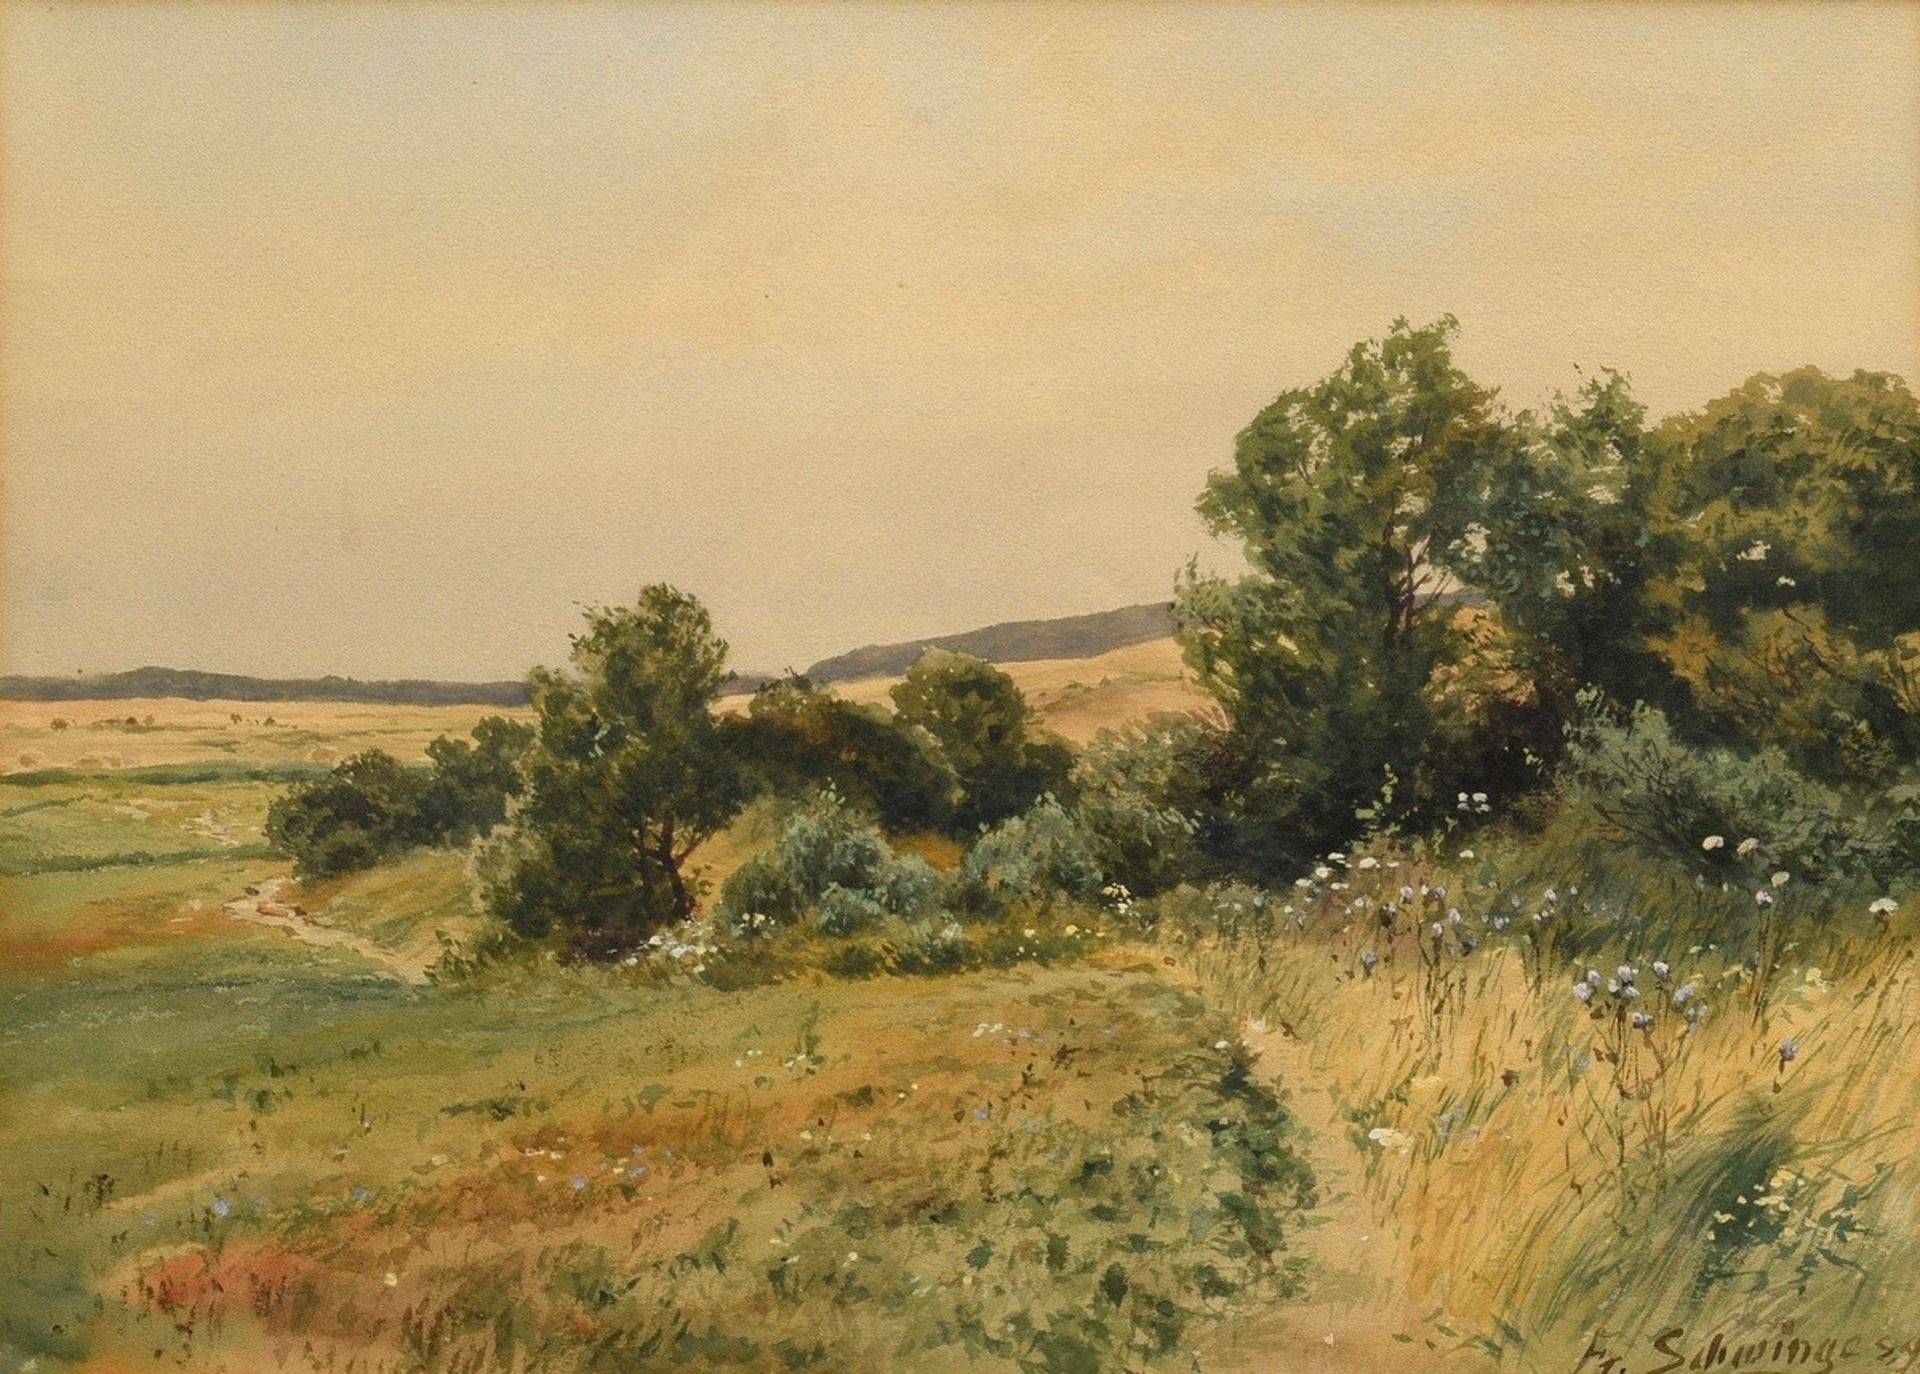 Schwinge, Friedrich (1852-1913) "Feldrain im Sommer" 1889, Aquarell, u.r. sign./dat., verso Klebeet